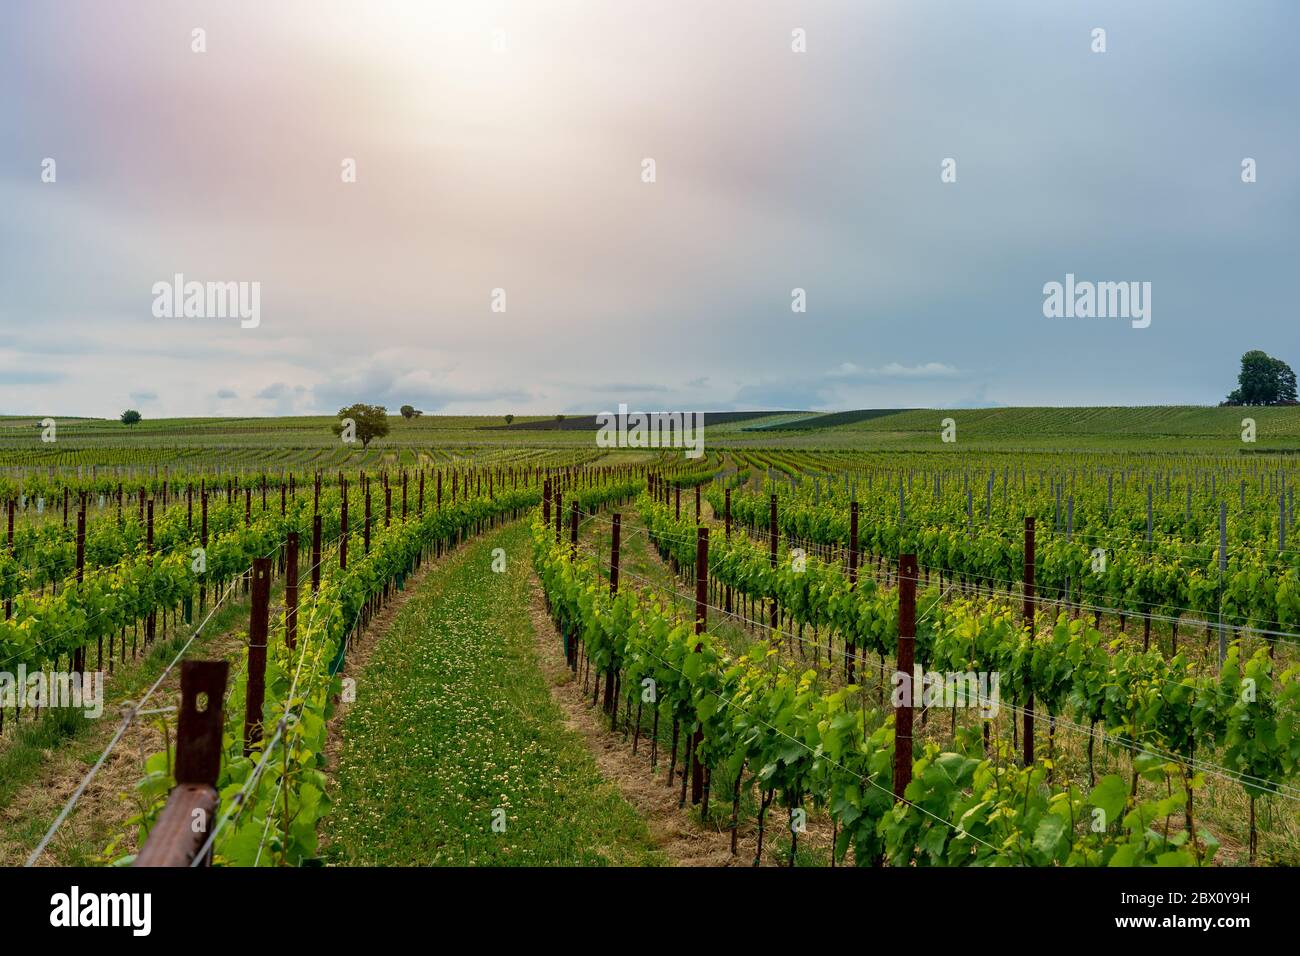 uvas verdes crudas en lindas filas en un viñedo primavera comienzo de verano Foto de stock